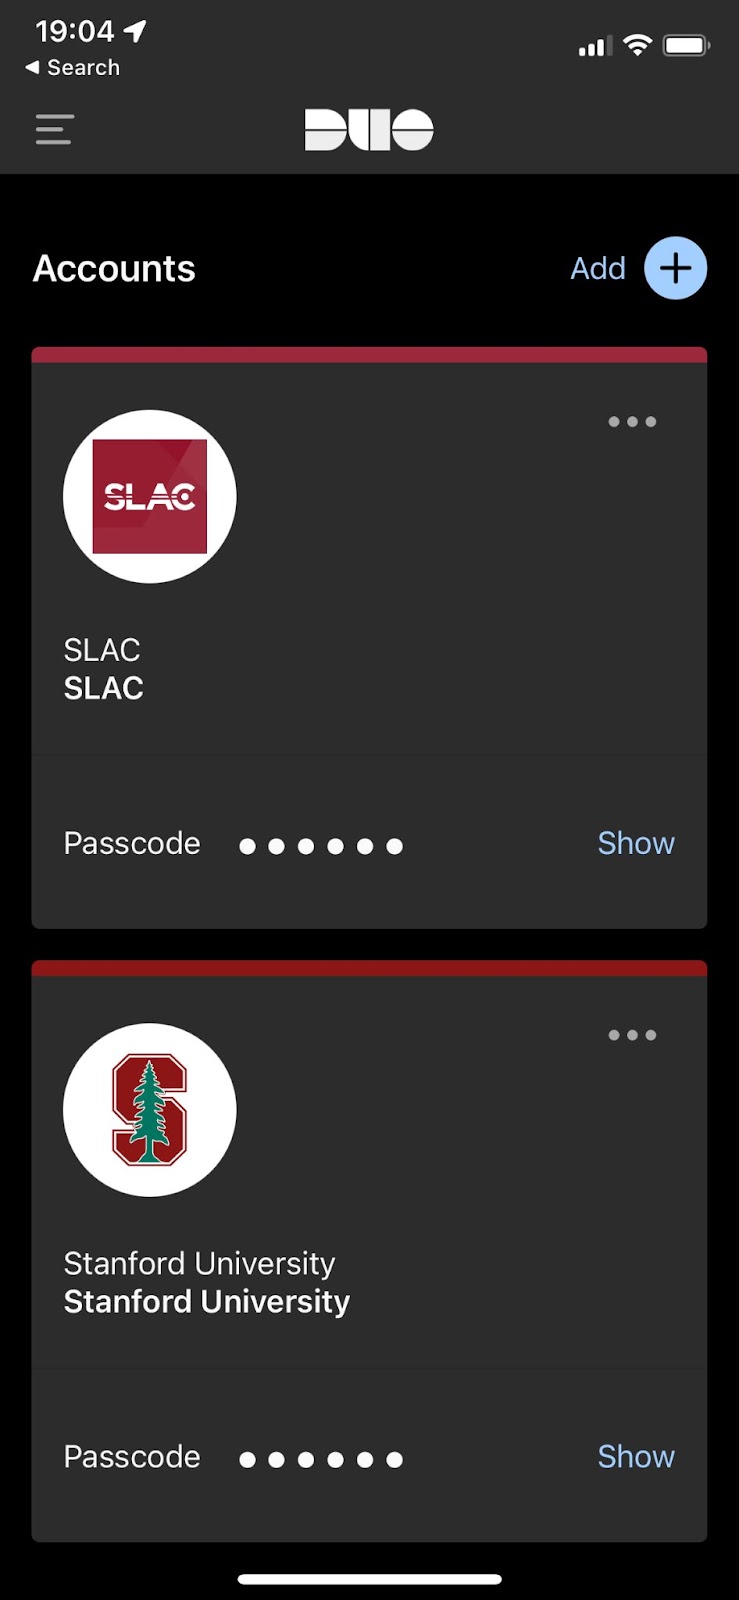 Screenshot of the Duo screen in you smartphone showing Account